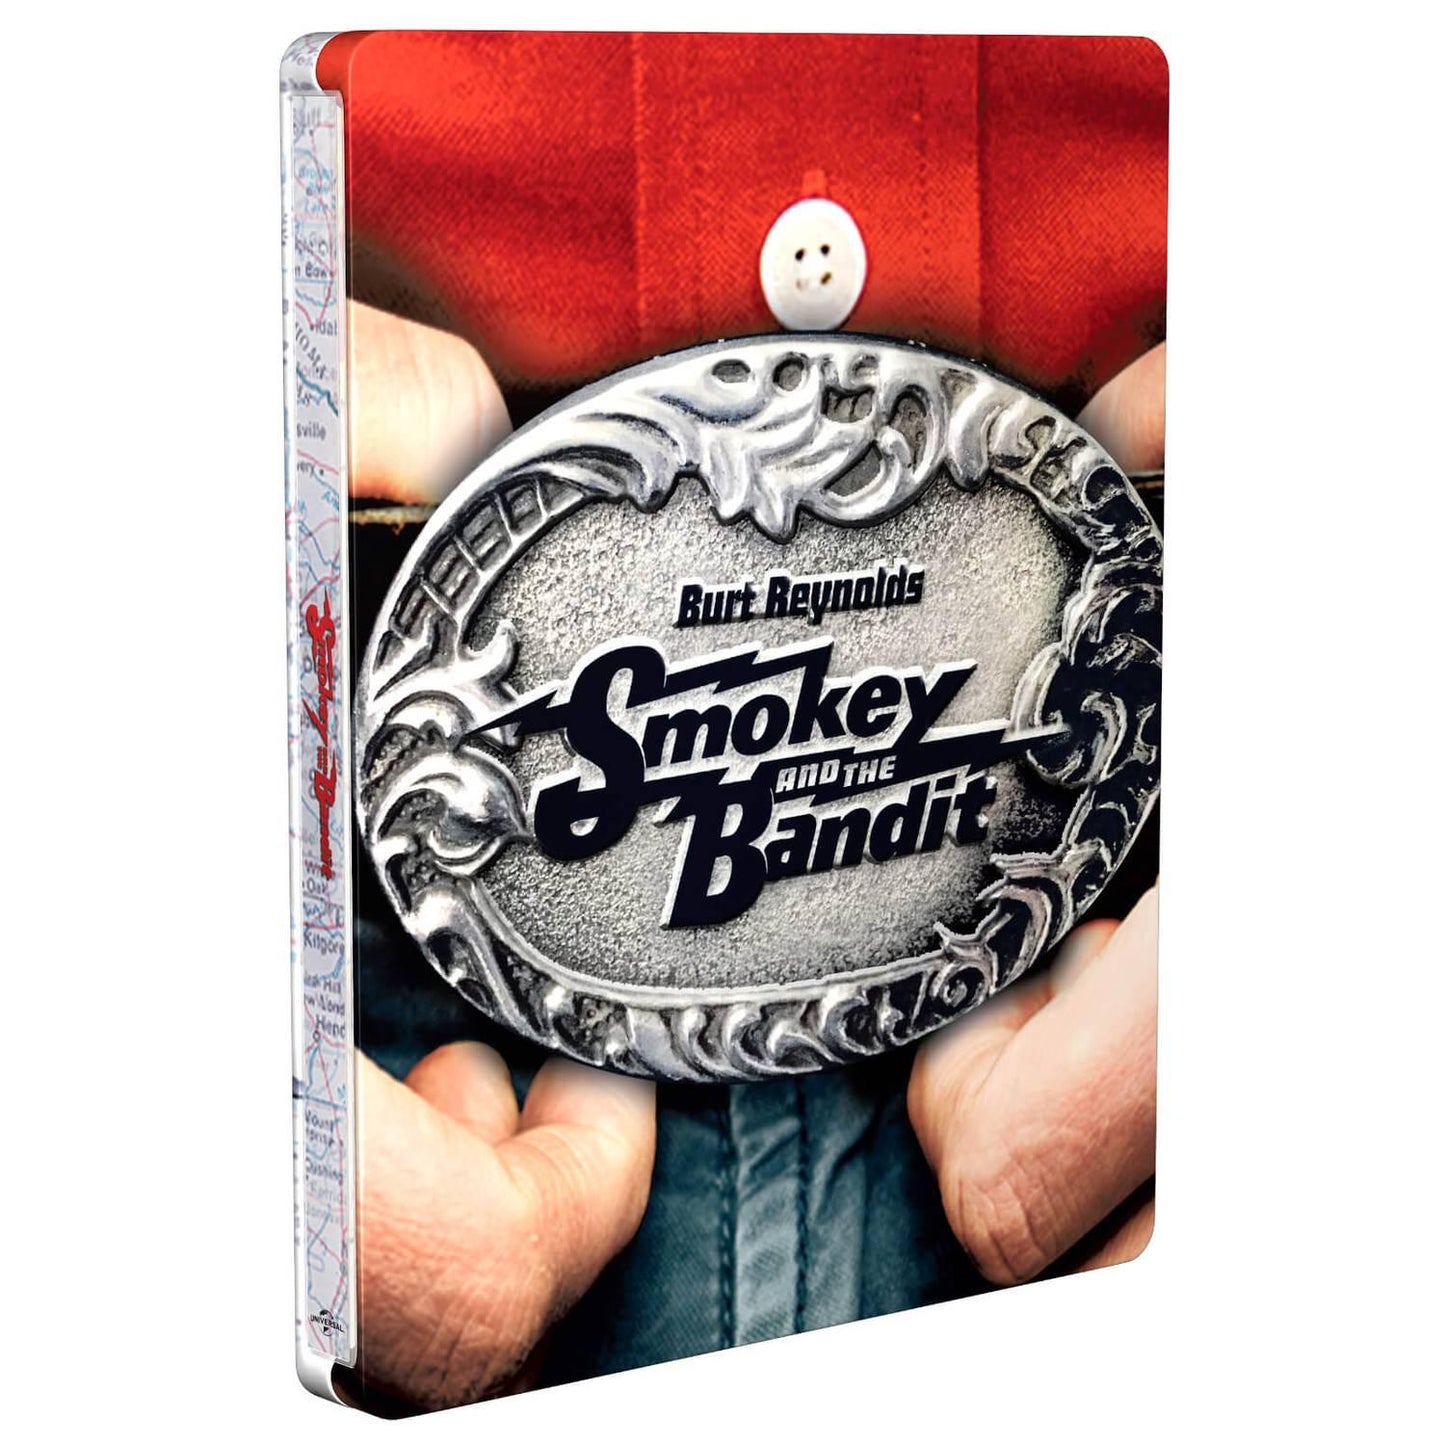 Смоки и Бандит (англ. язык) (4K UHD Blu-ray) Steelbook